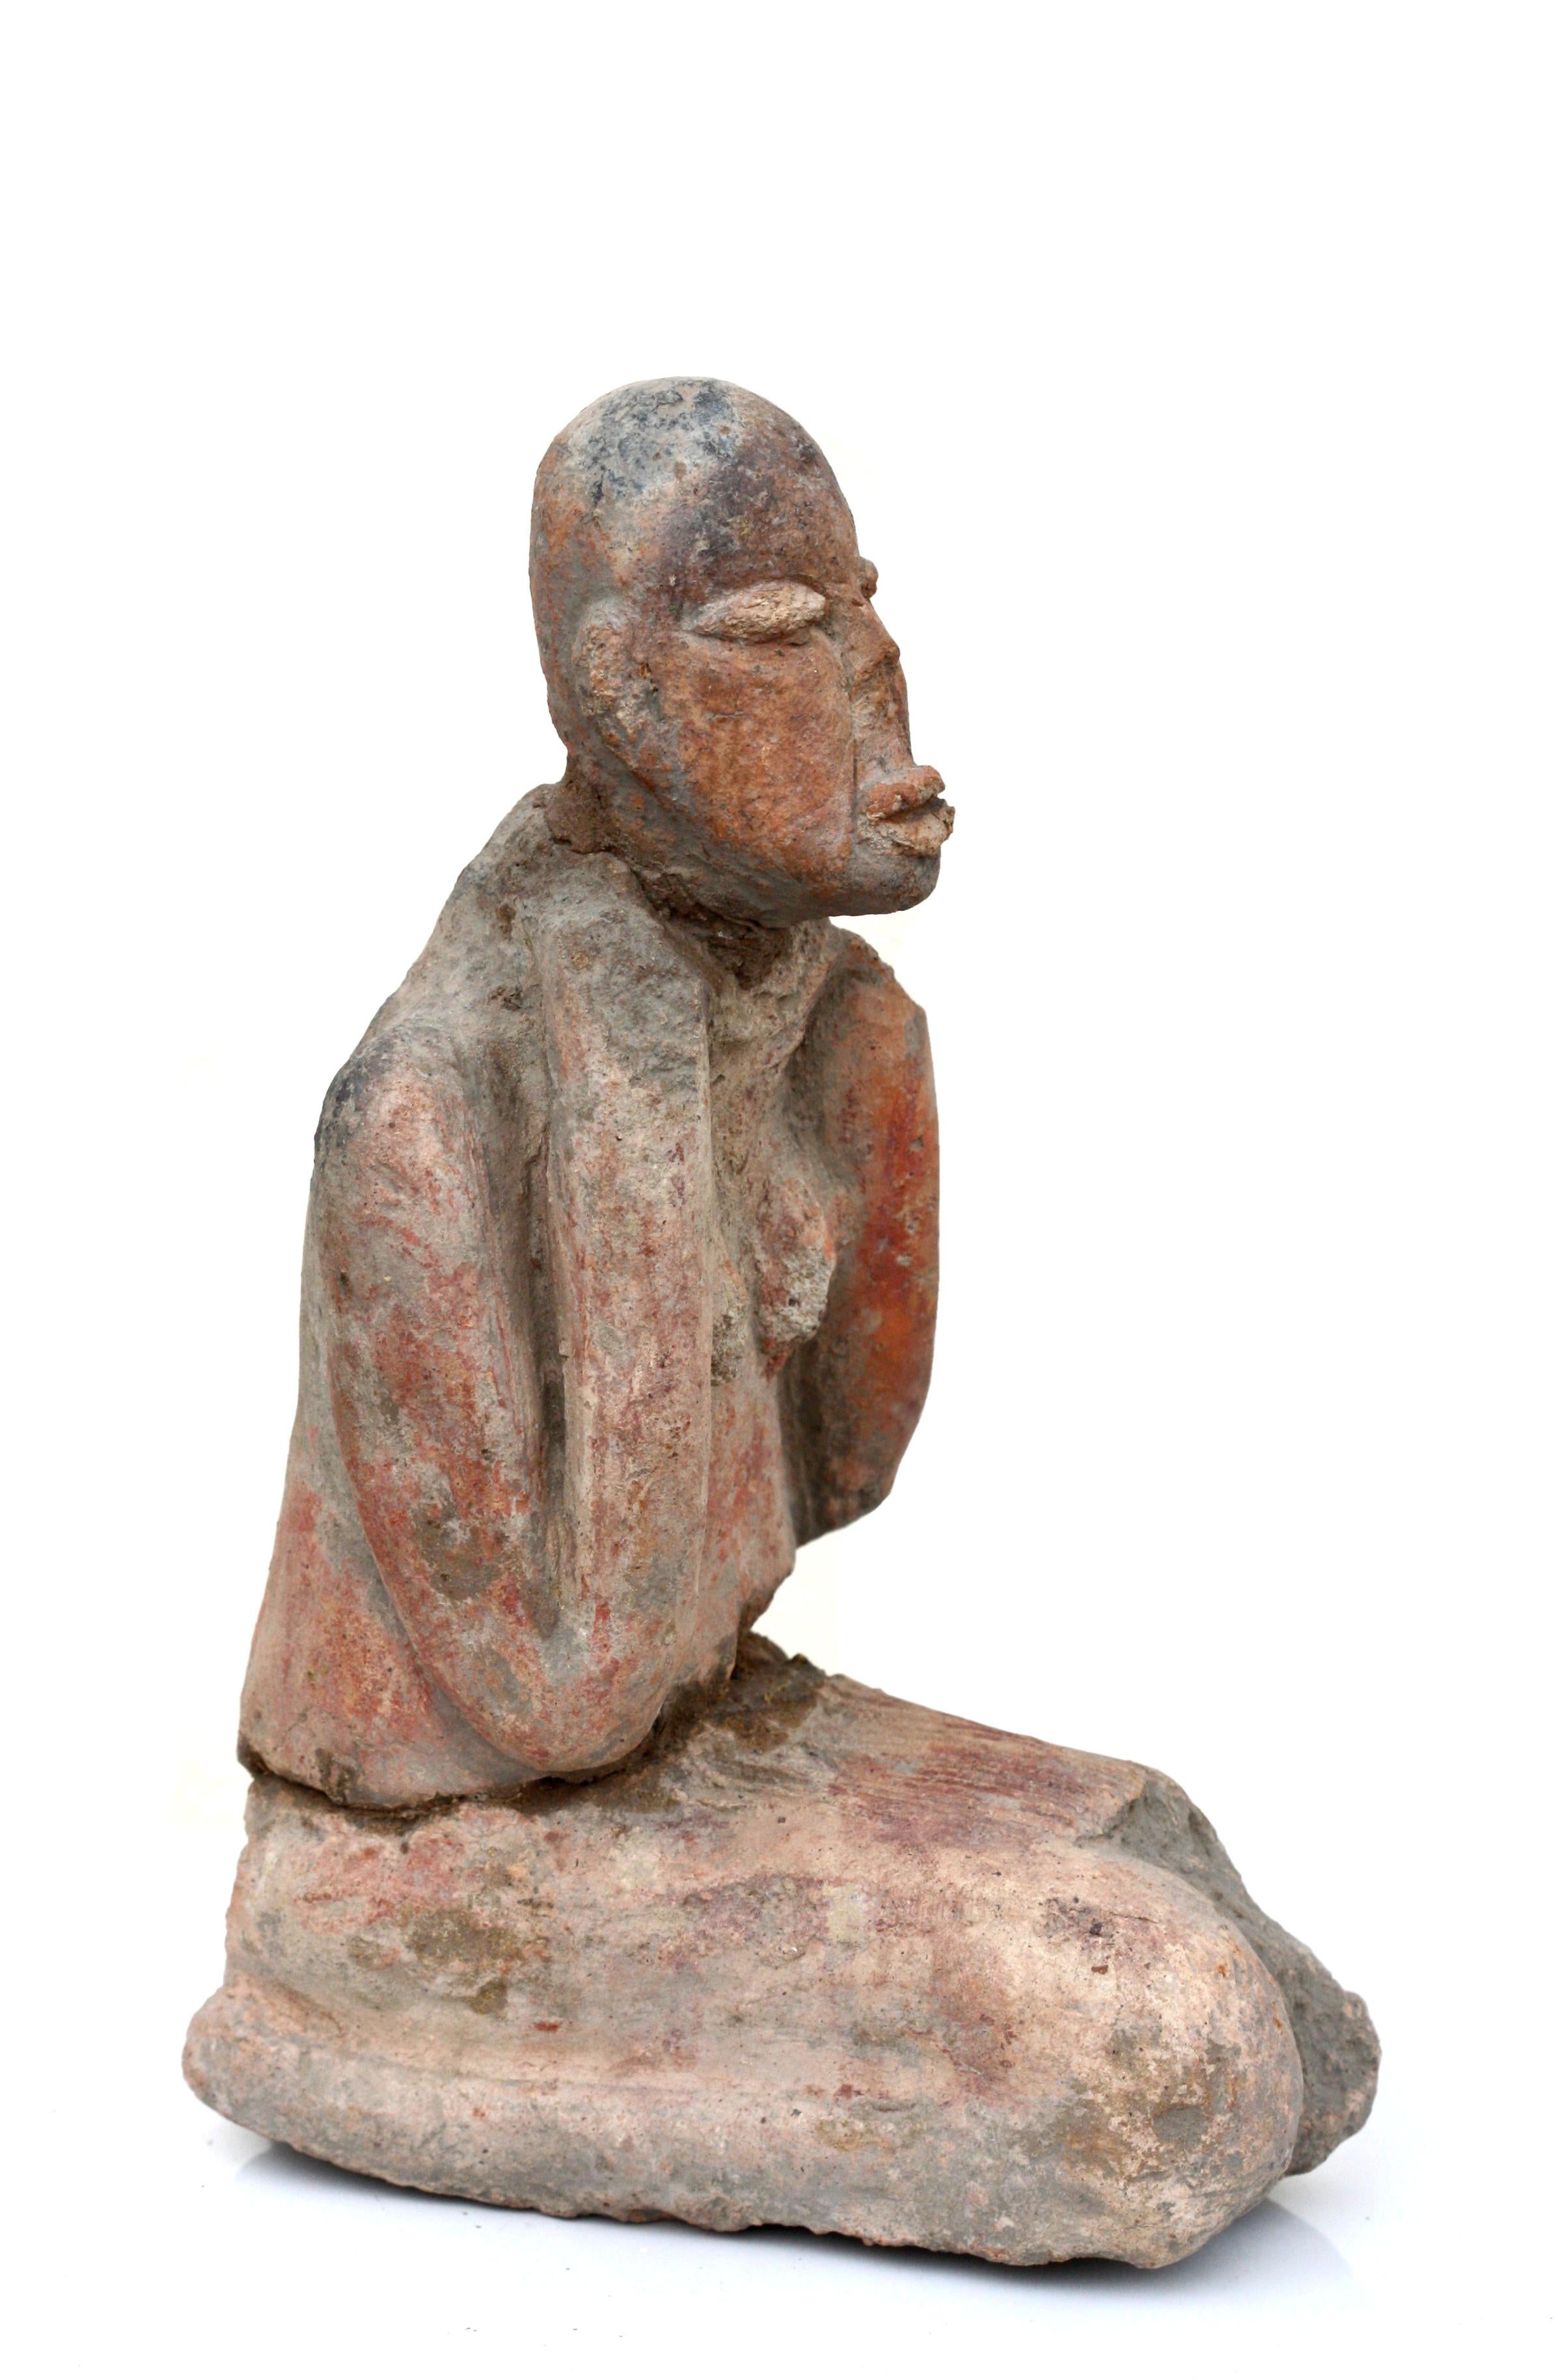 République du Mali : figurine en terre cuite d'une figure ancestrale féminine.
agenouillée, les pieds sous terre, les bras sur les épaules,
vers 1100 - 1400 ADS 
Mesures : Hauteur 9 1/2 in. 24.1 cm.
Largeur 6 1/4 in. 15.8 cm.